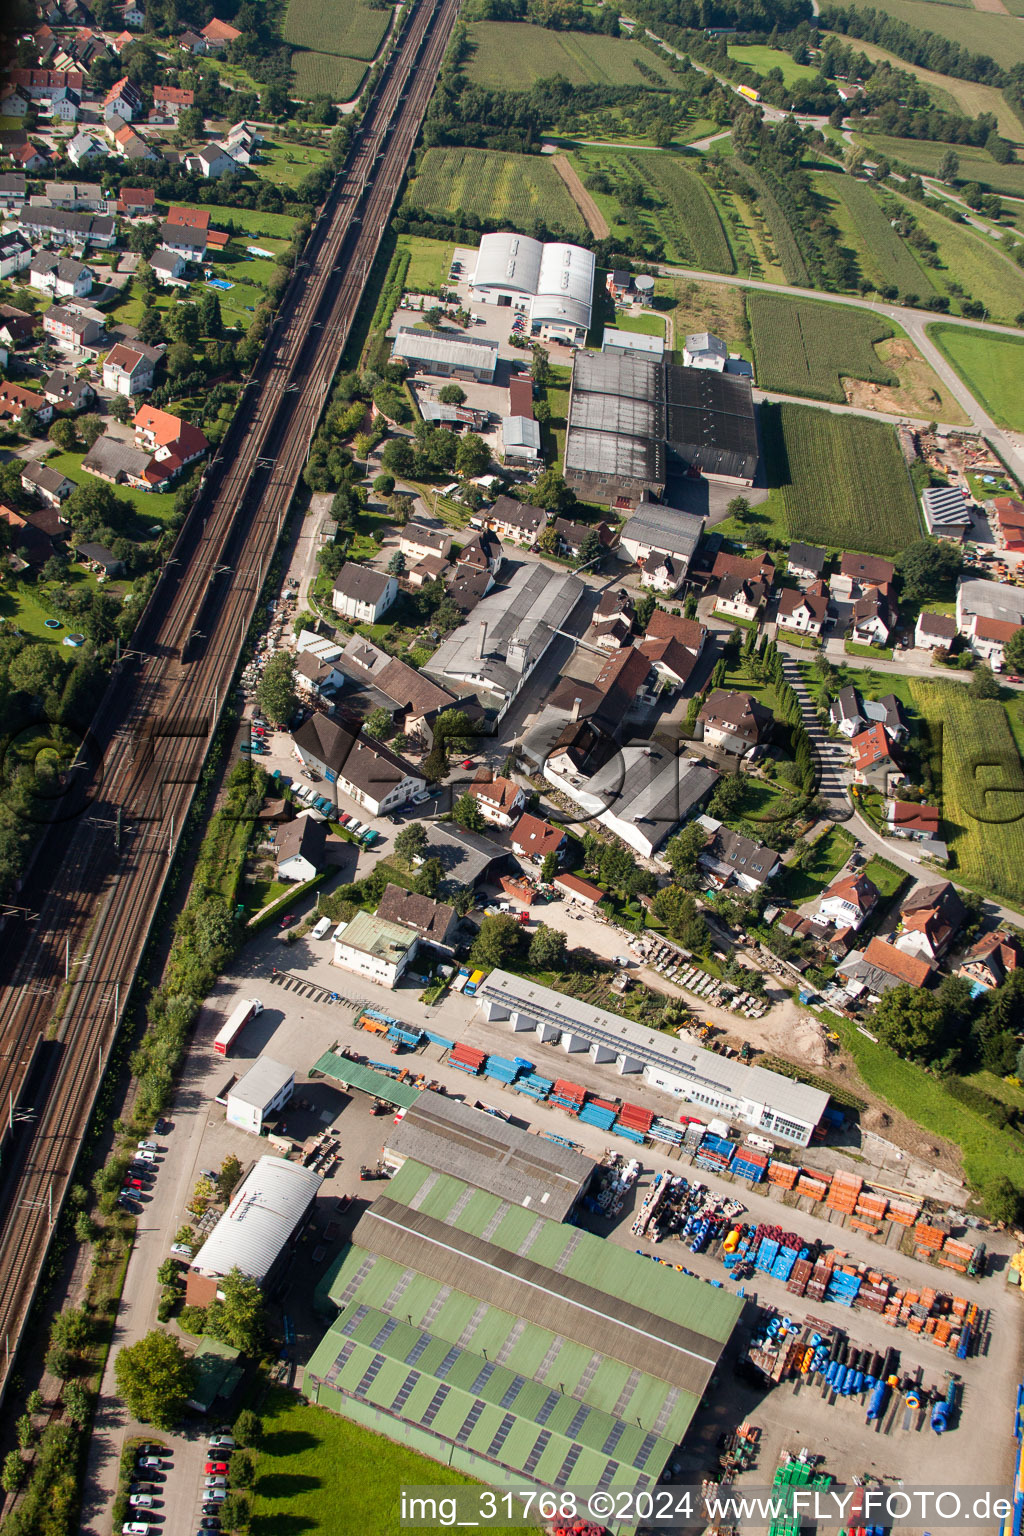 Gebäude und Produktionshallen auf dem Werksgelände Muffenrohr GmbH in Ottersweier im Bundesland Baden-Württemberg, Deutschland aus der Drohnenperspektive